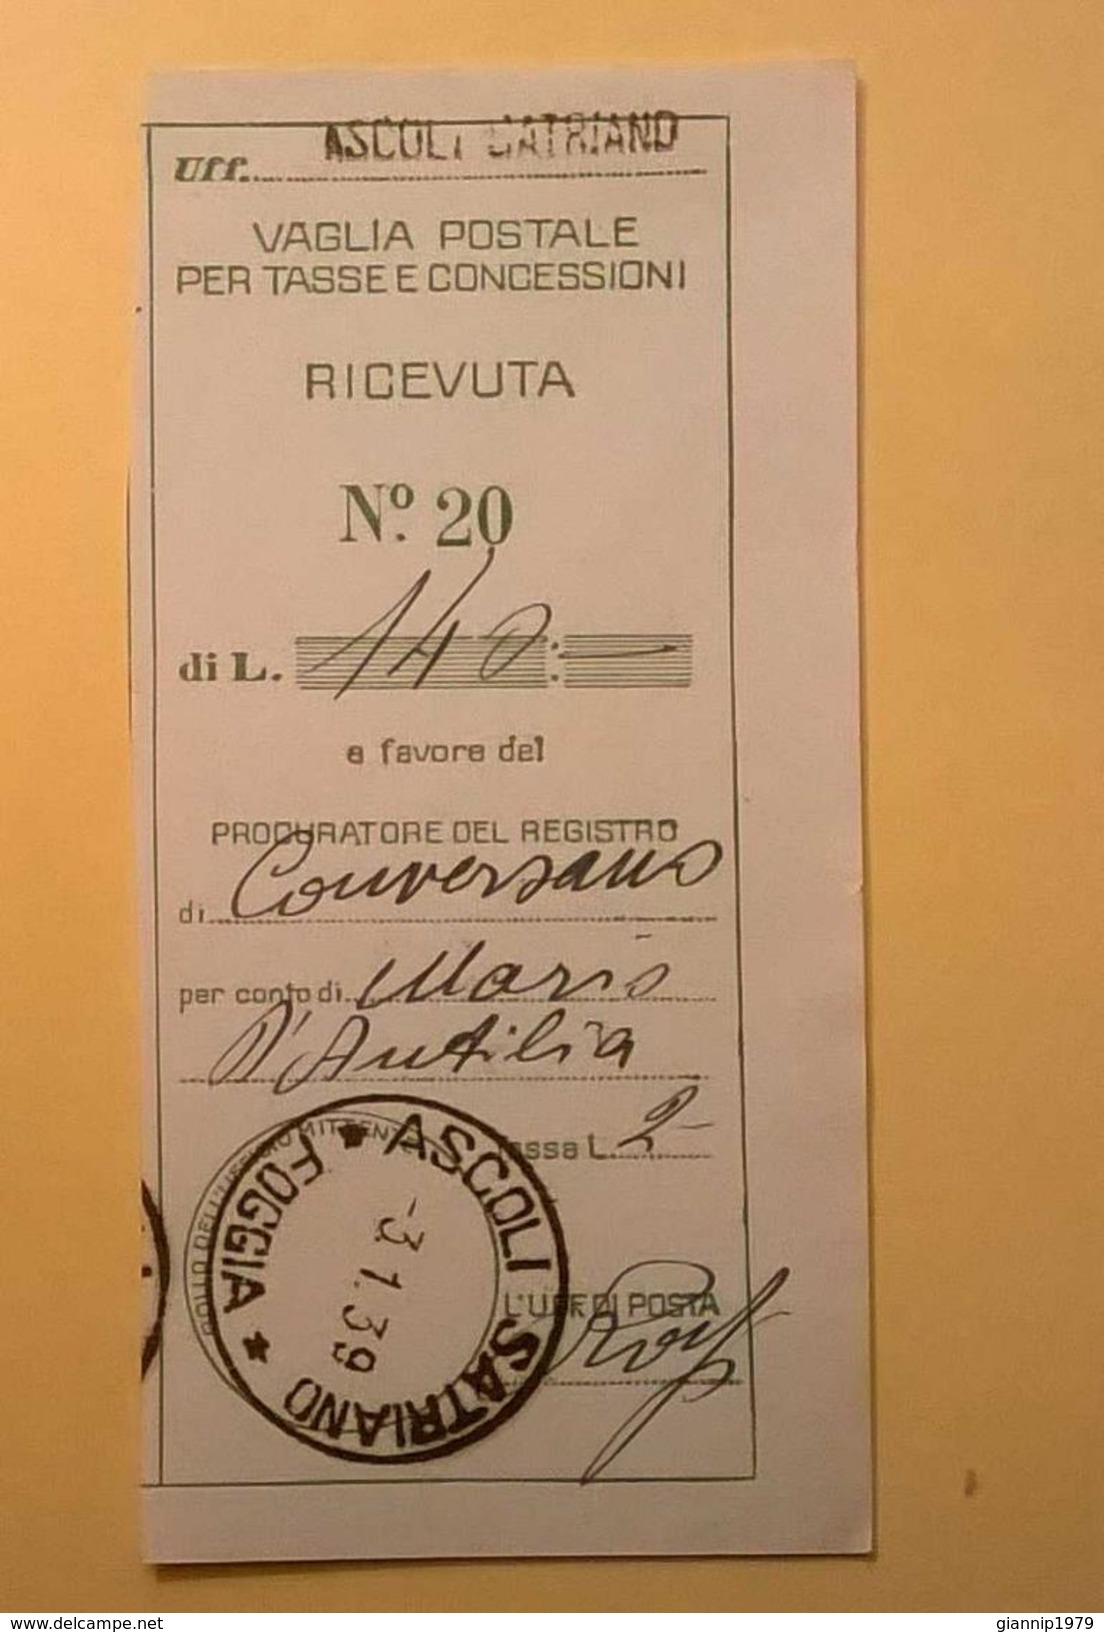 VAGLIA POSTALE RICEVUTA ASCOLI SATRIANO FOGGIA 1939 - Vaglia Postale